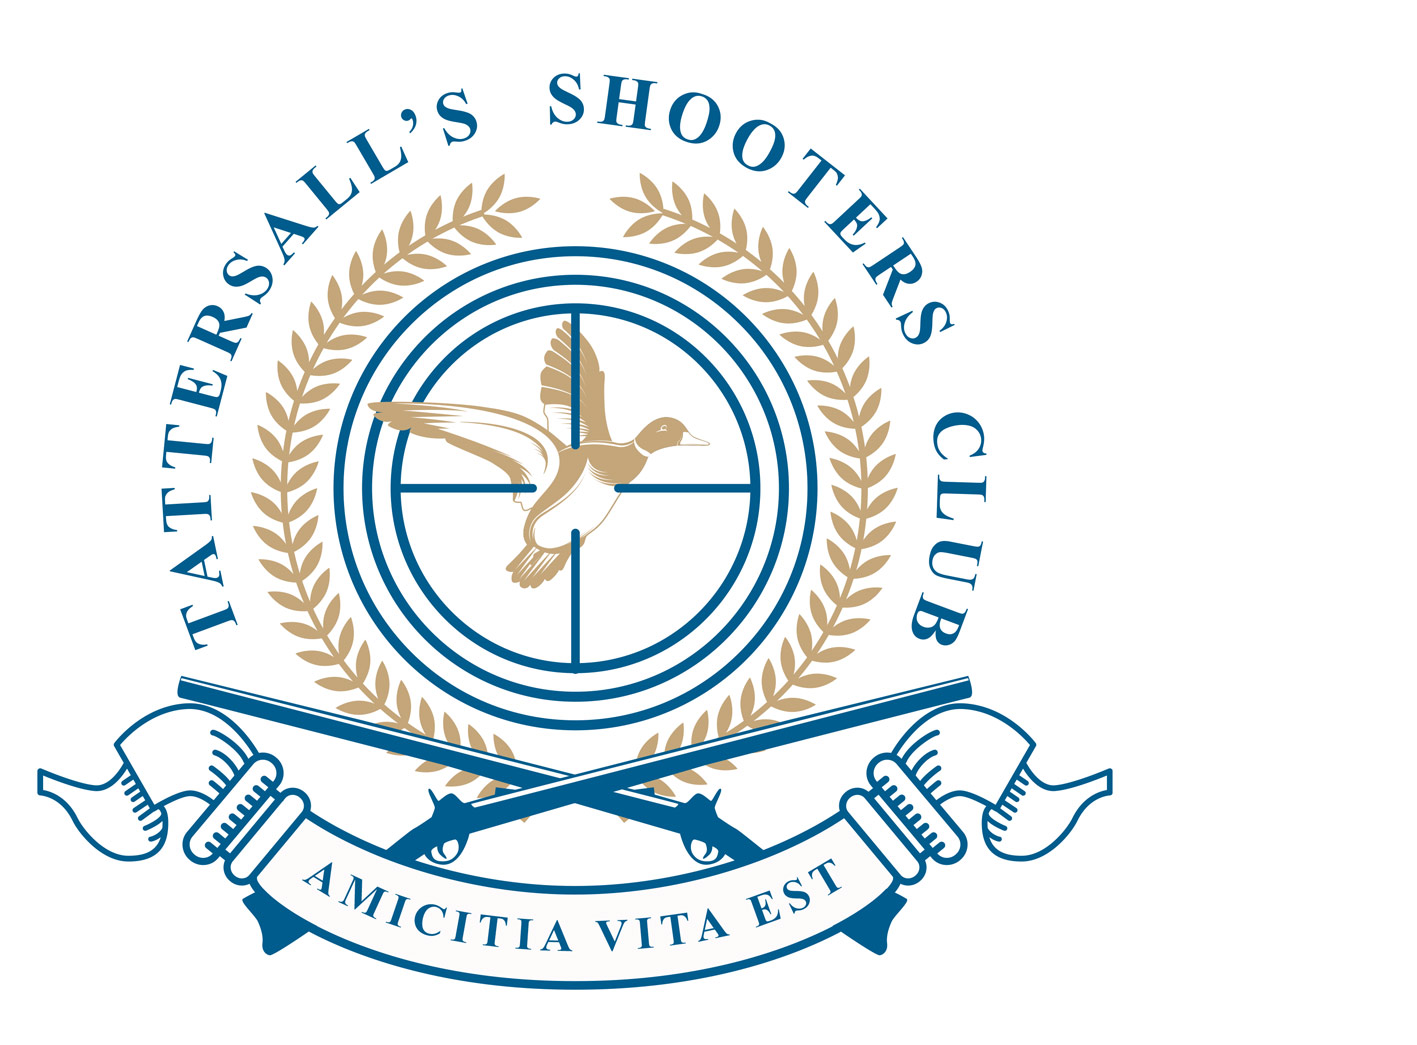 tattersalls shooters club